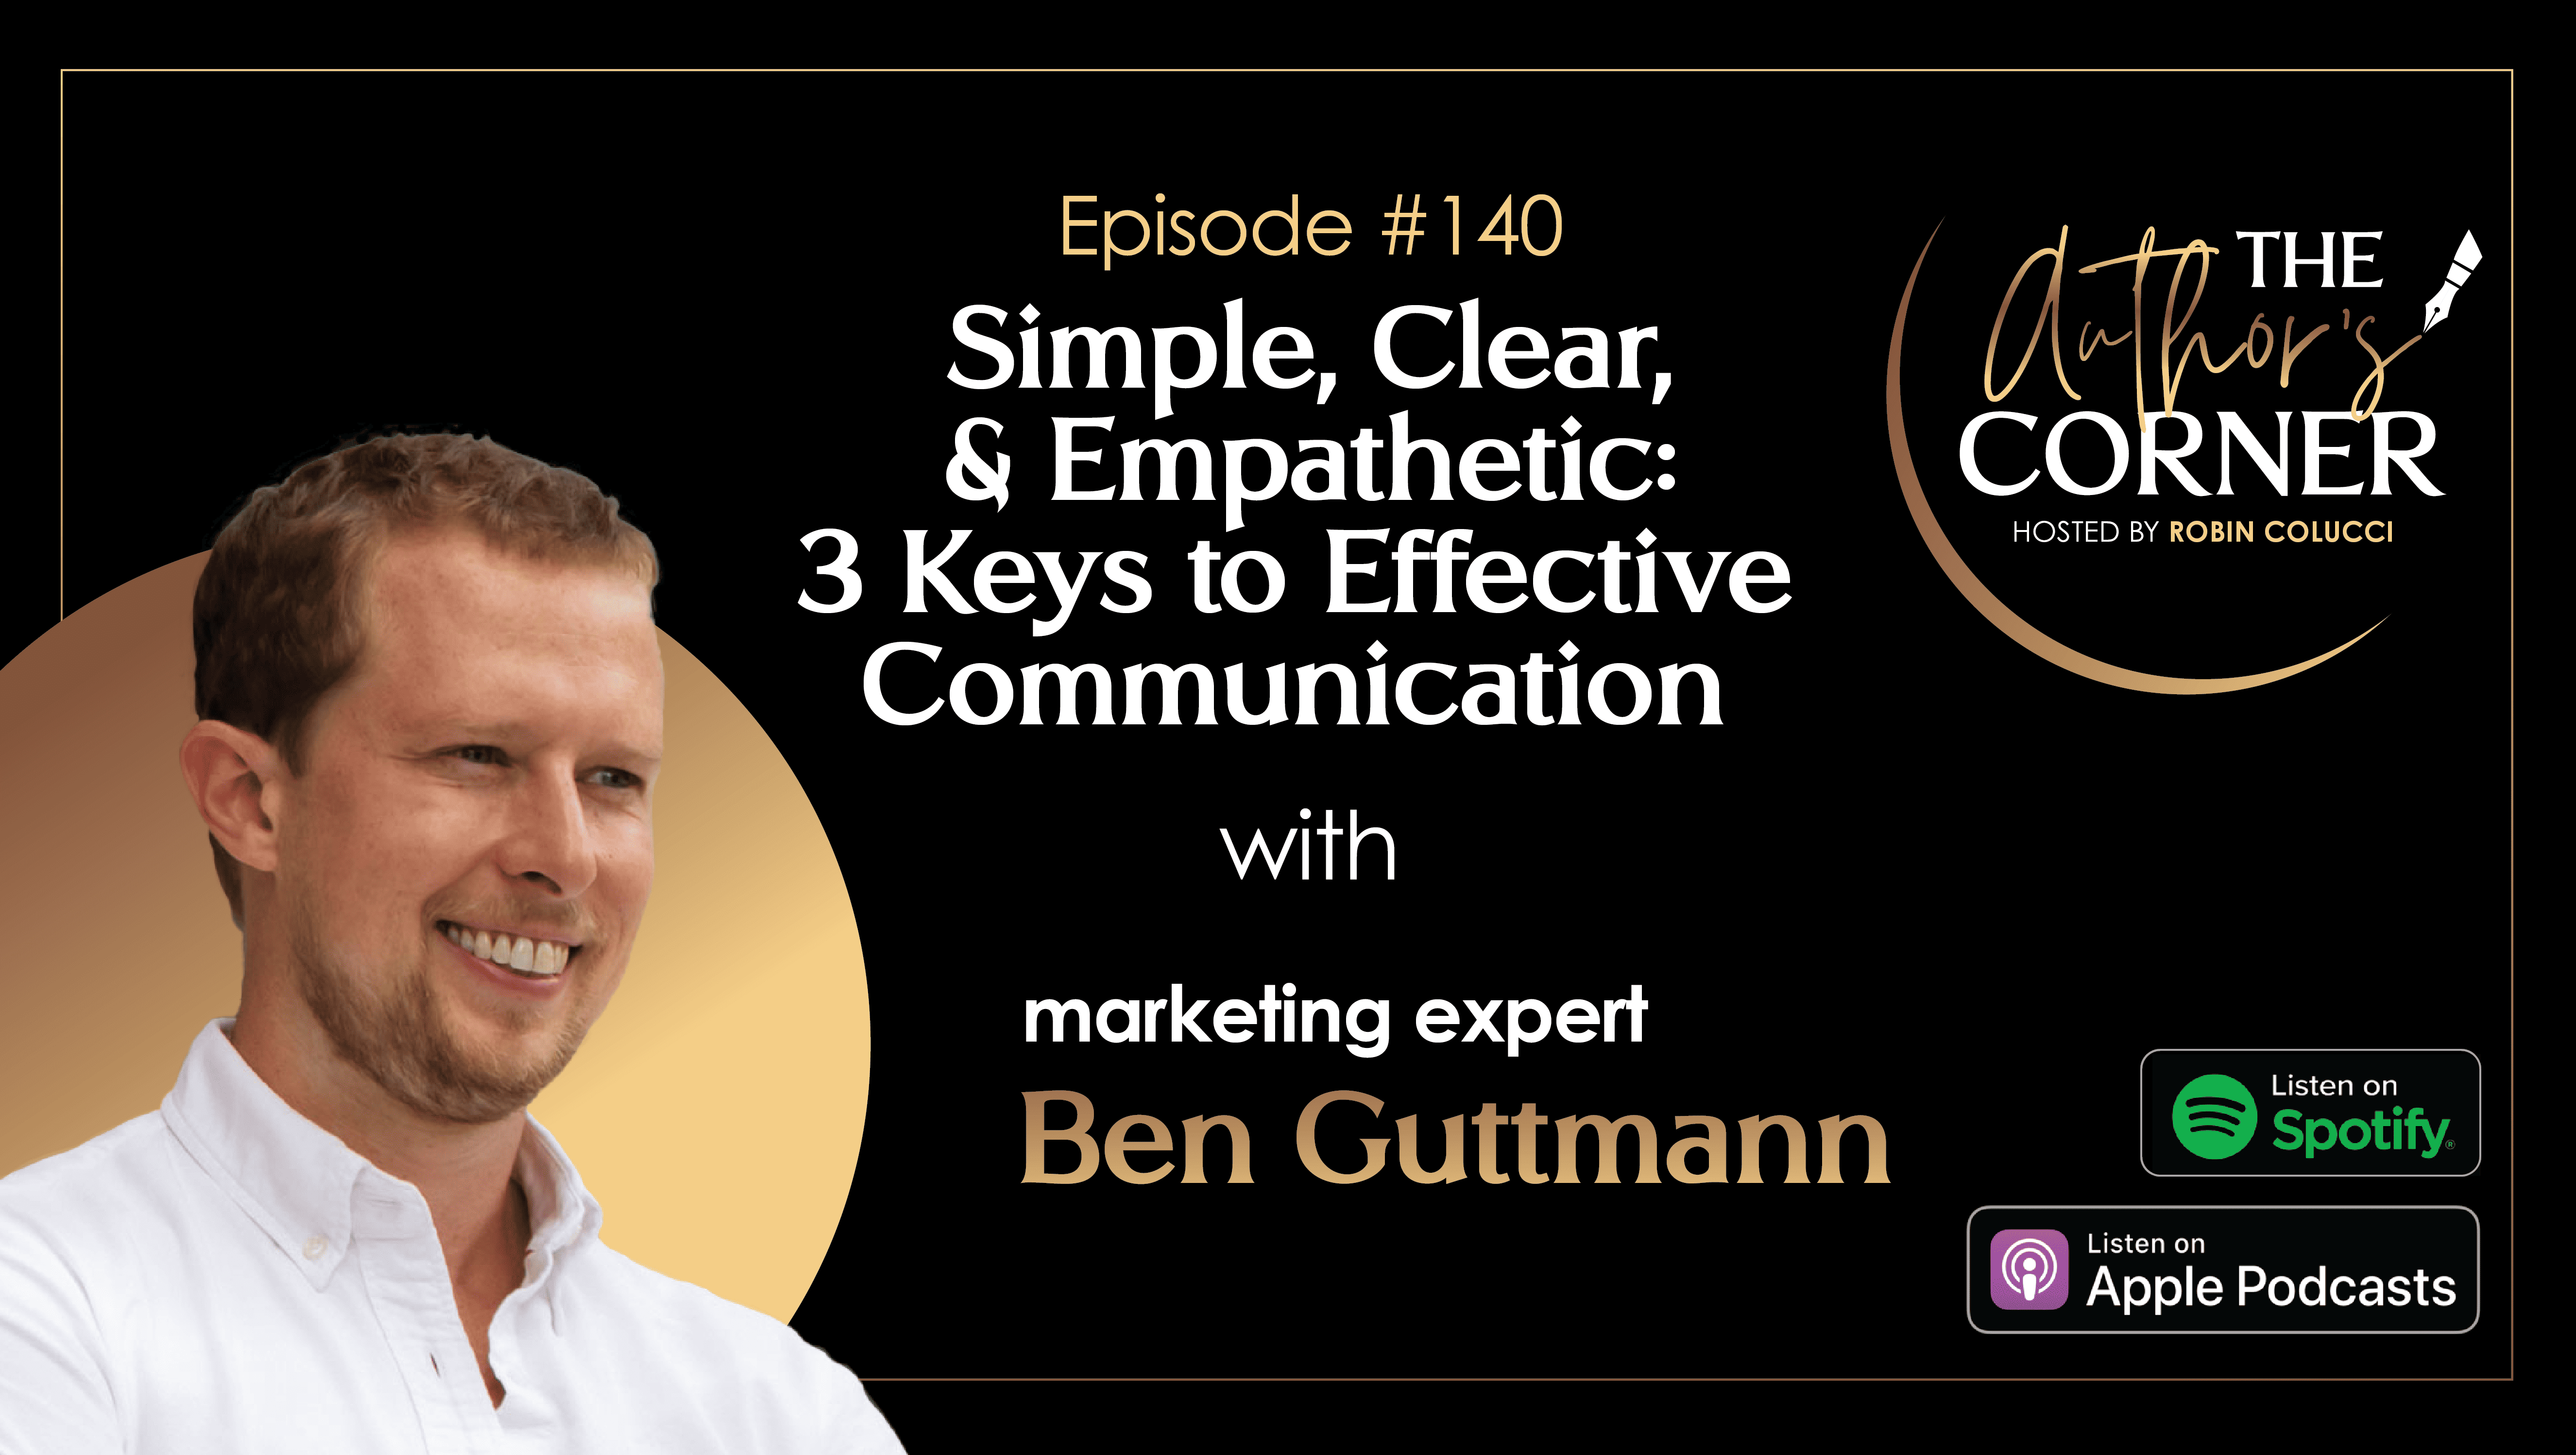 3 Keys to Effective Communication with Ben Guttmann